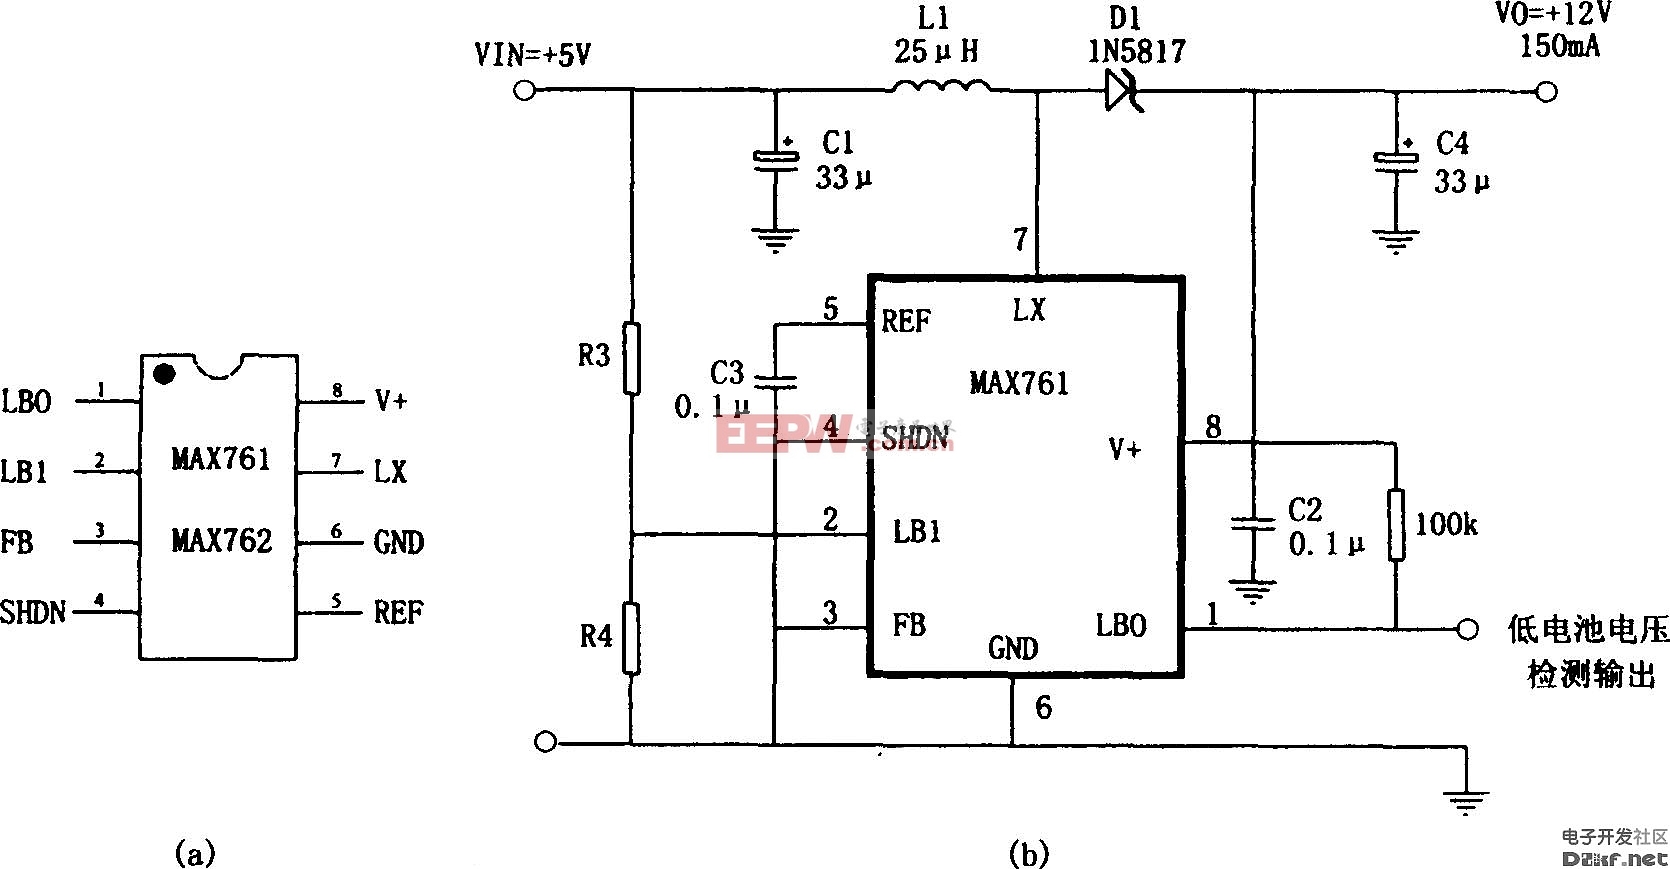  5V→ 12V升压电源(MAX761)